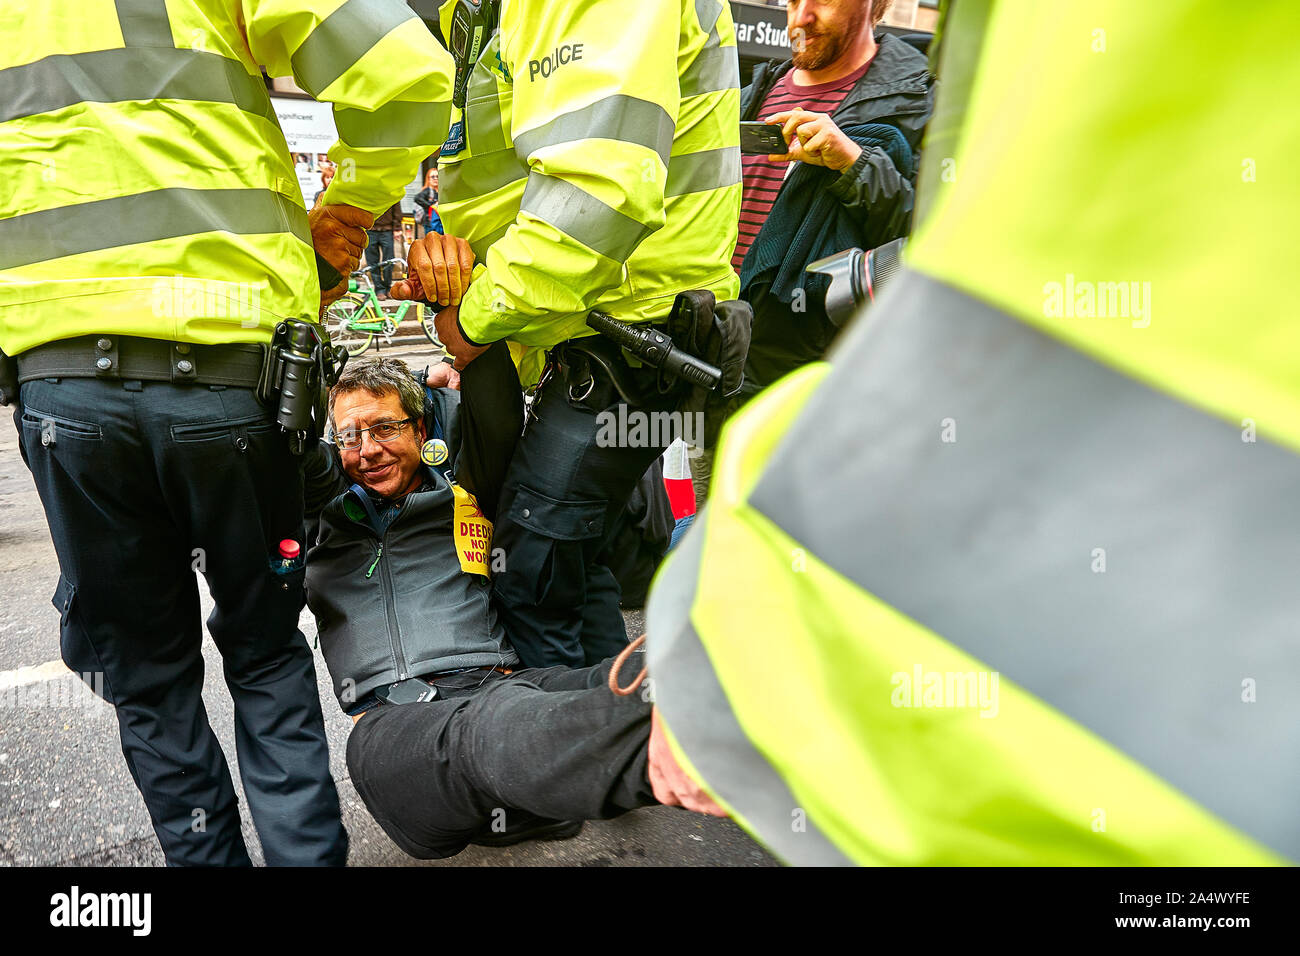 Londres, Reino Unido - 16 Oct, 2019: activista ambiental George Monbiot es arrastrada por la policía tras el bloqueo de una carretera en Trafalgar Square. Foto de stock